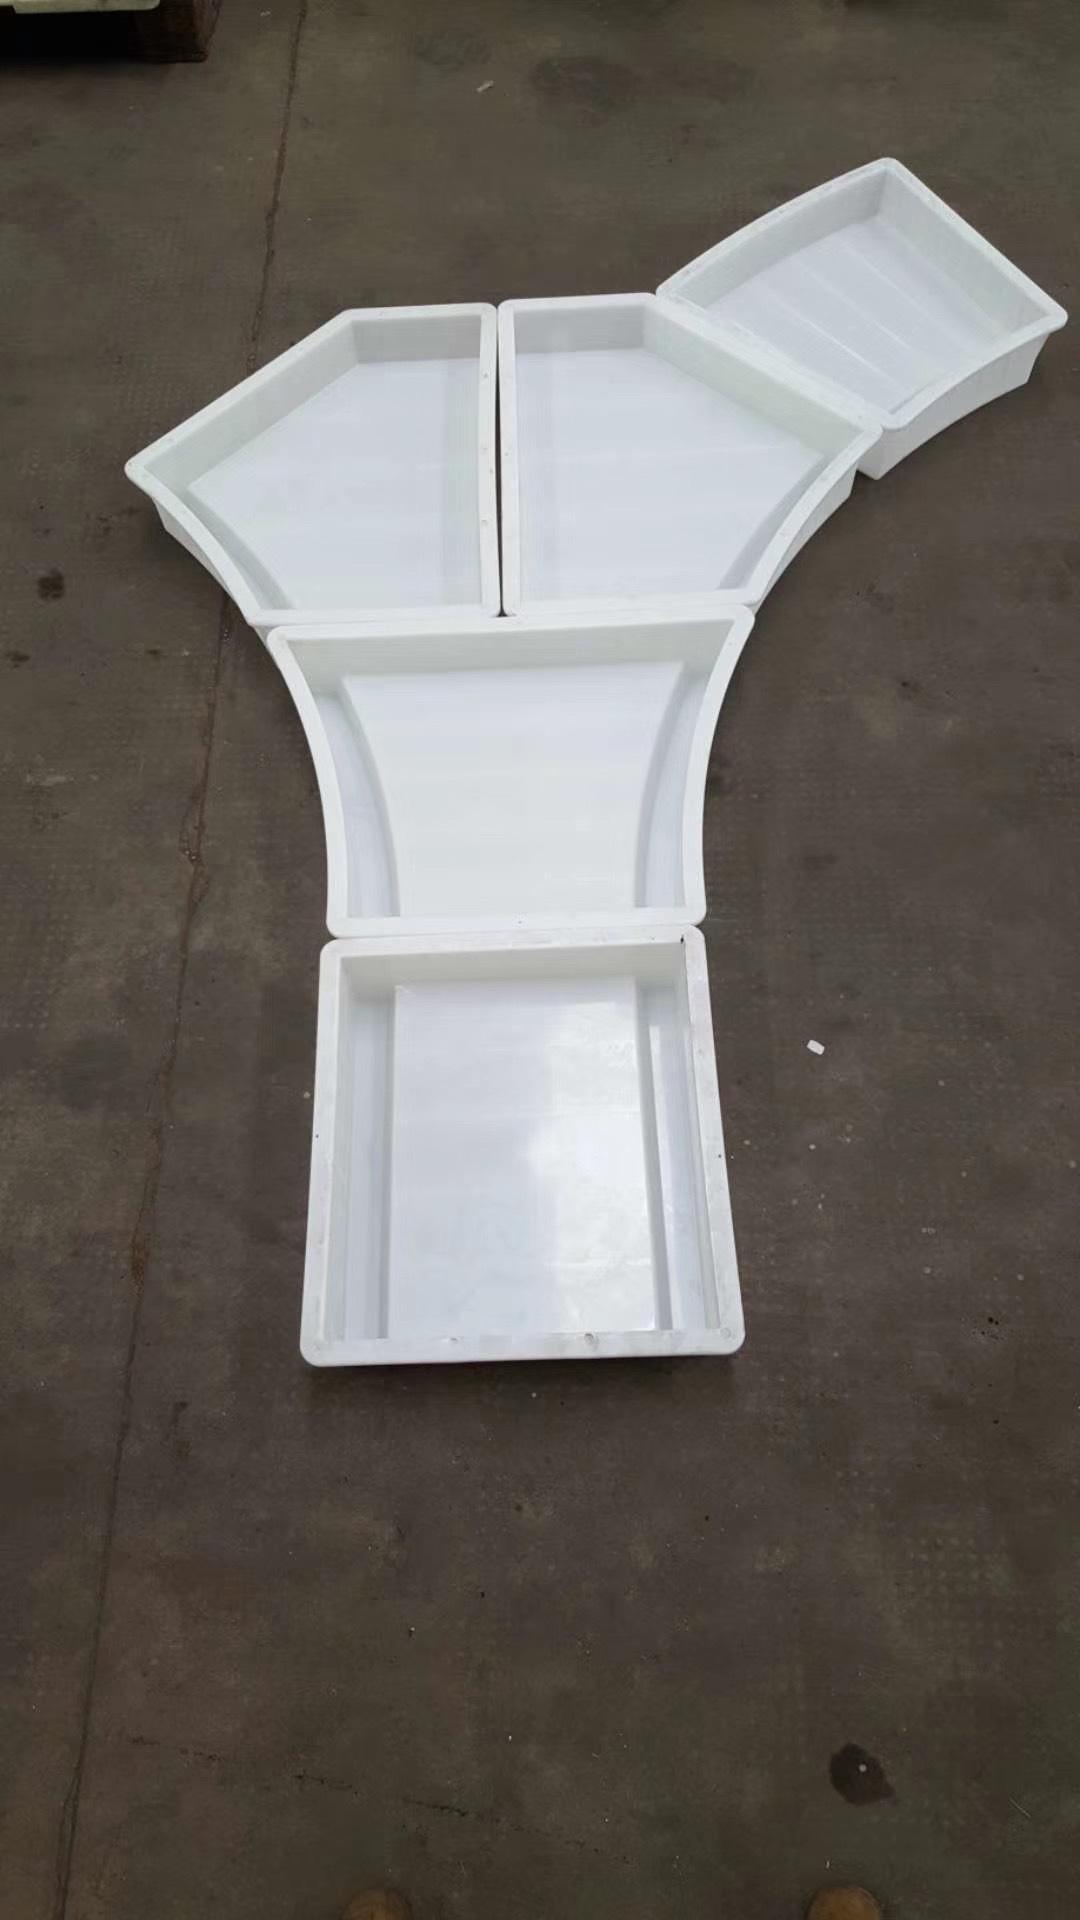 麻城至武穴高速公路拱形骨架塑模 塑料模具 高速公路塑料骨架